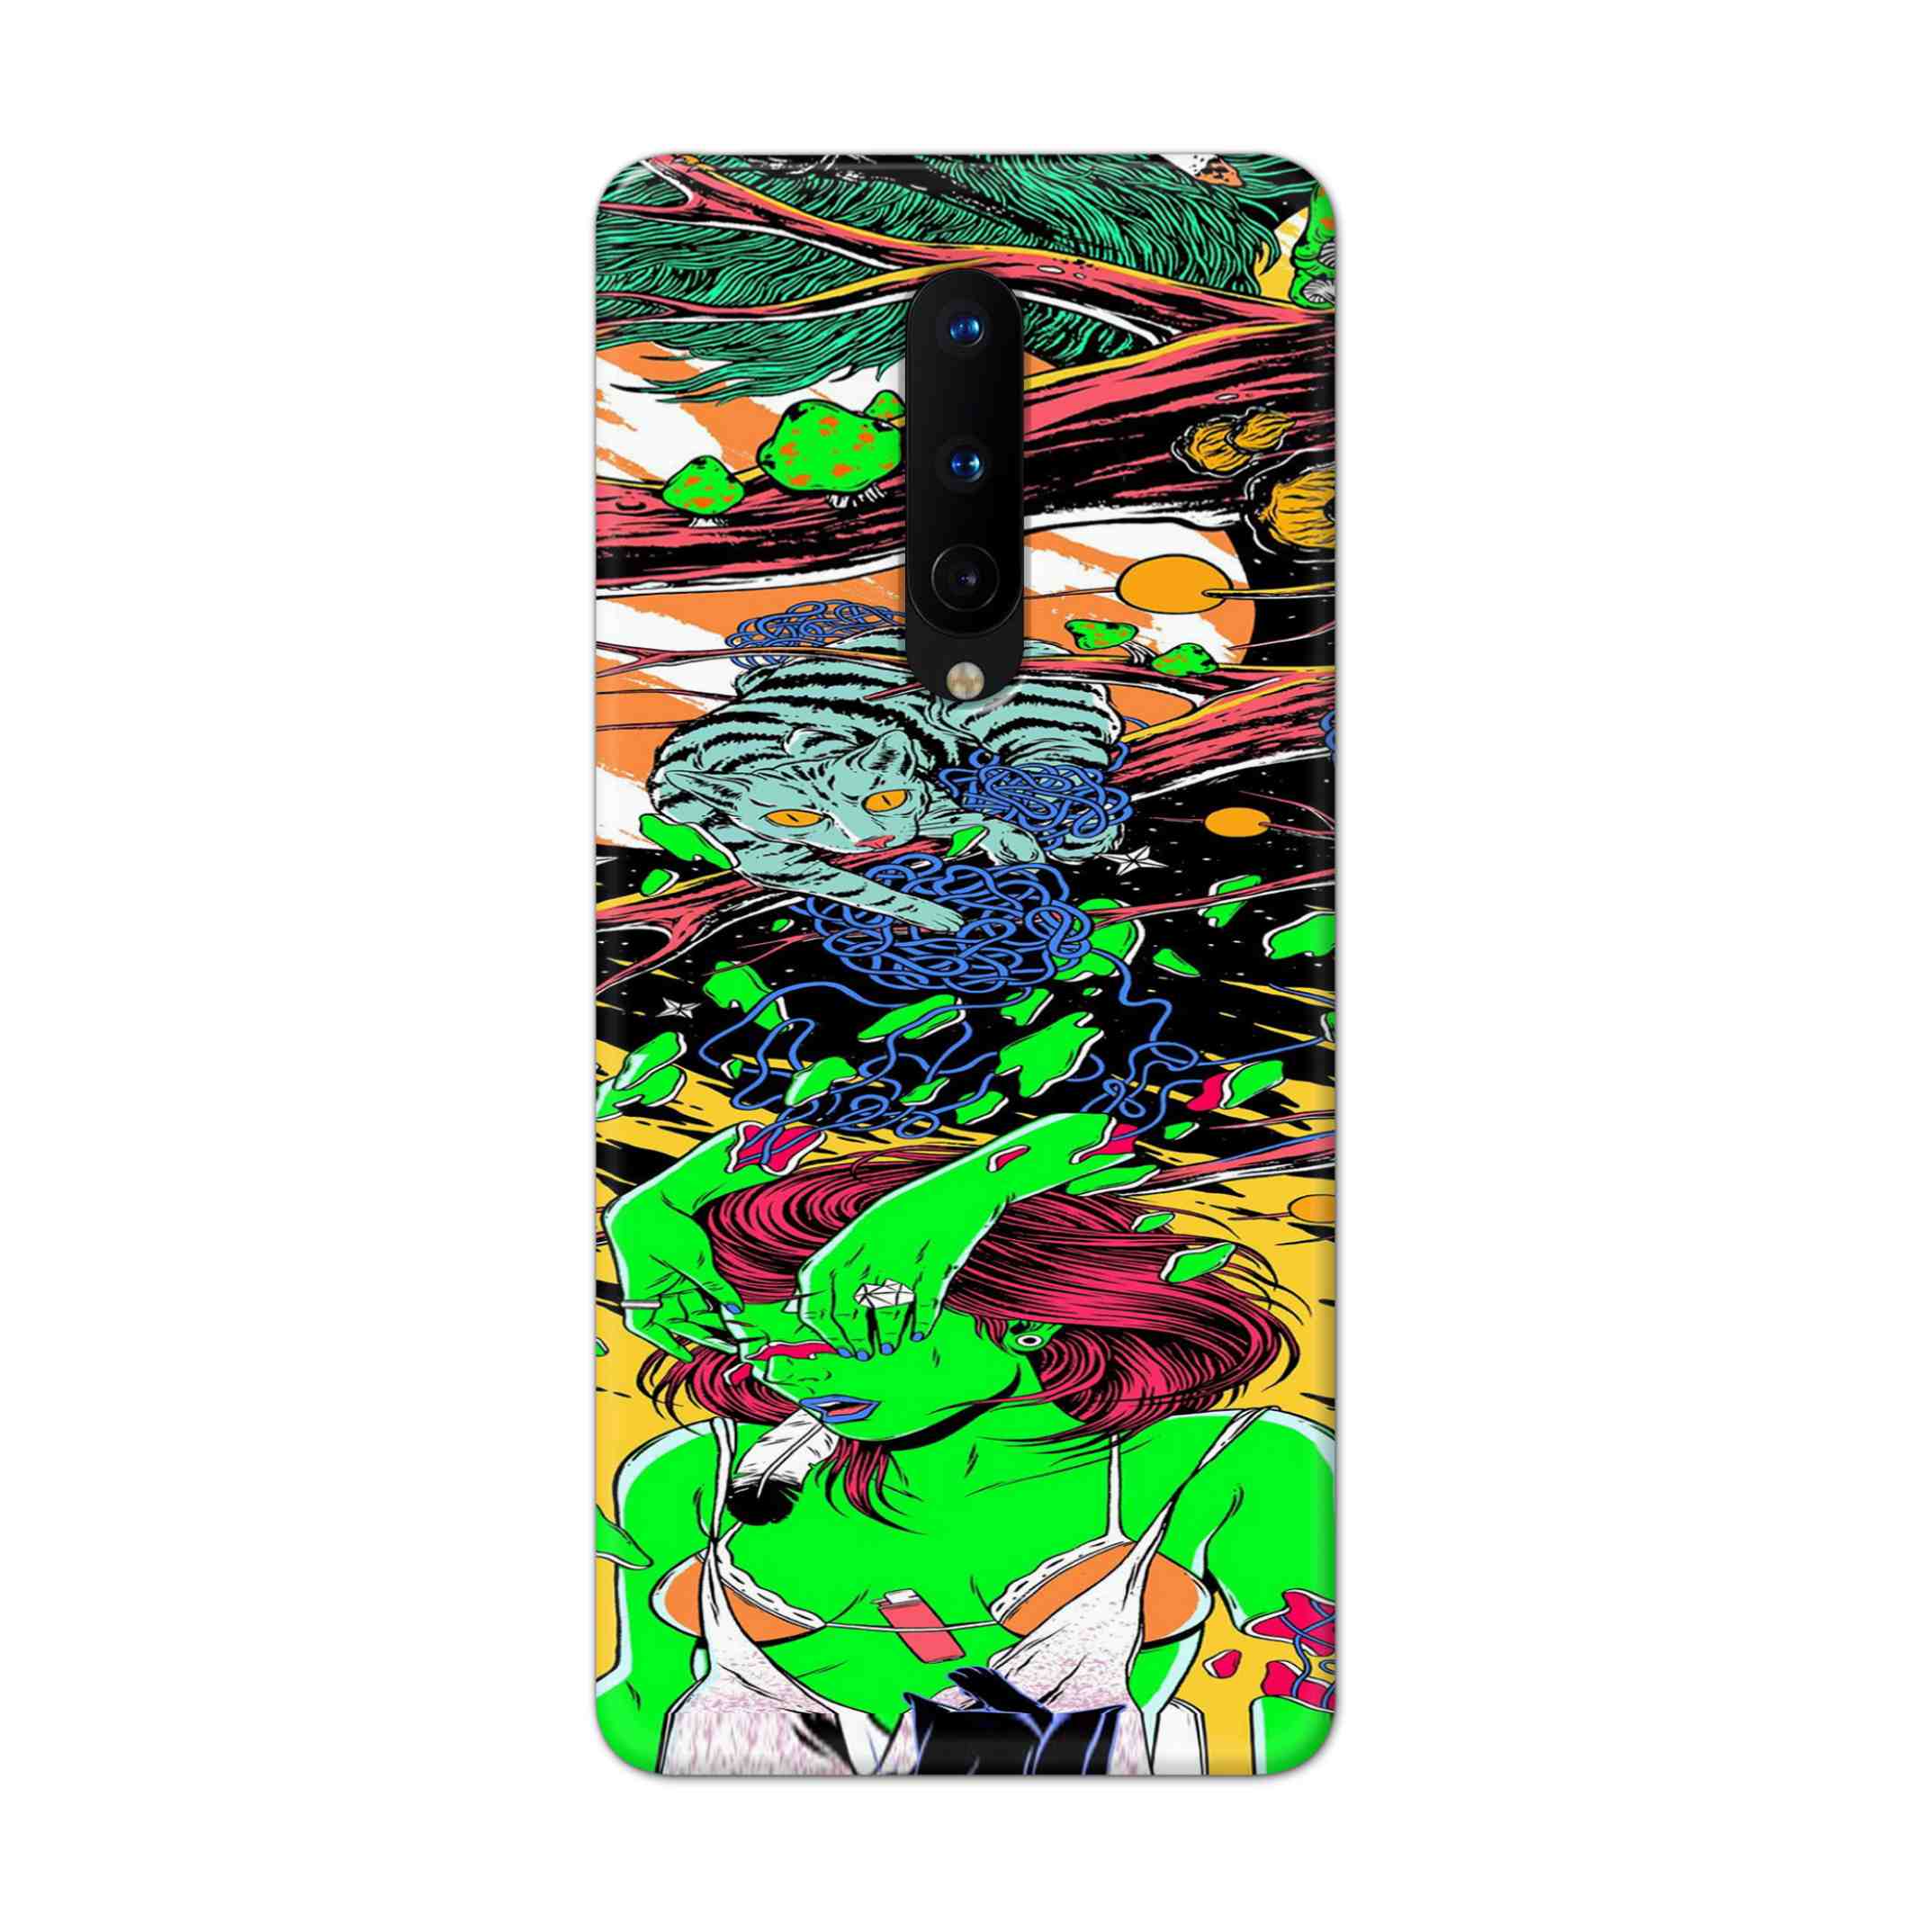 Buy Green Girl Art Hard Back Mobile Phone Case Cover For OnePlus 8 Online